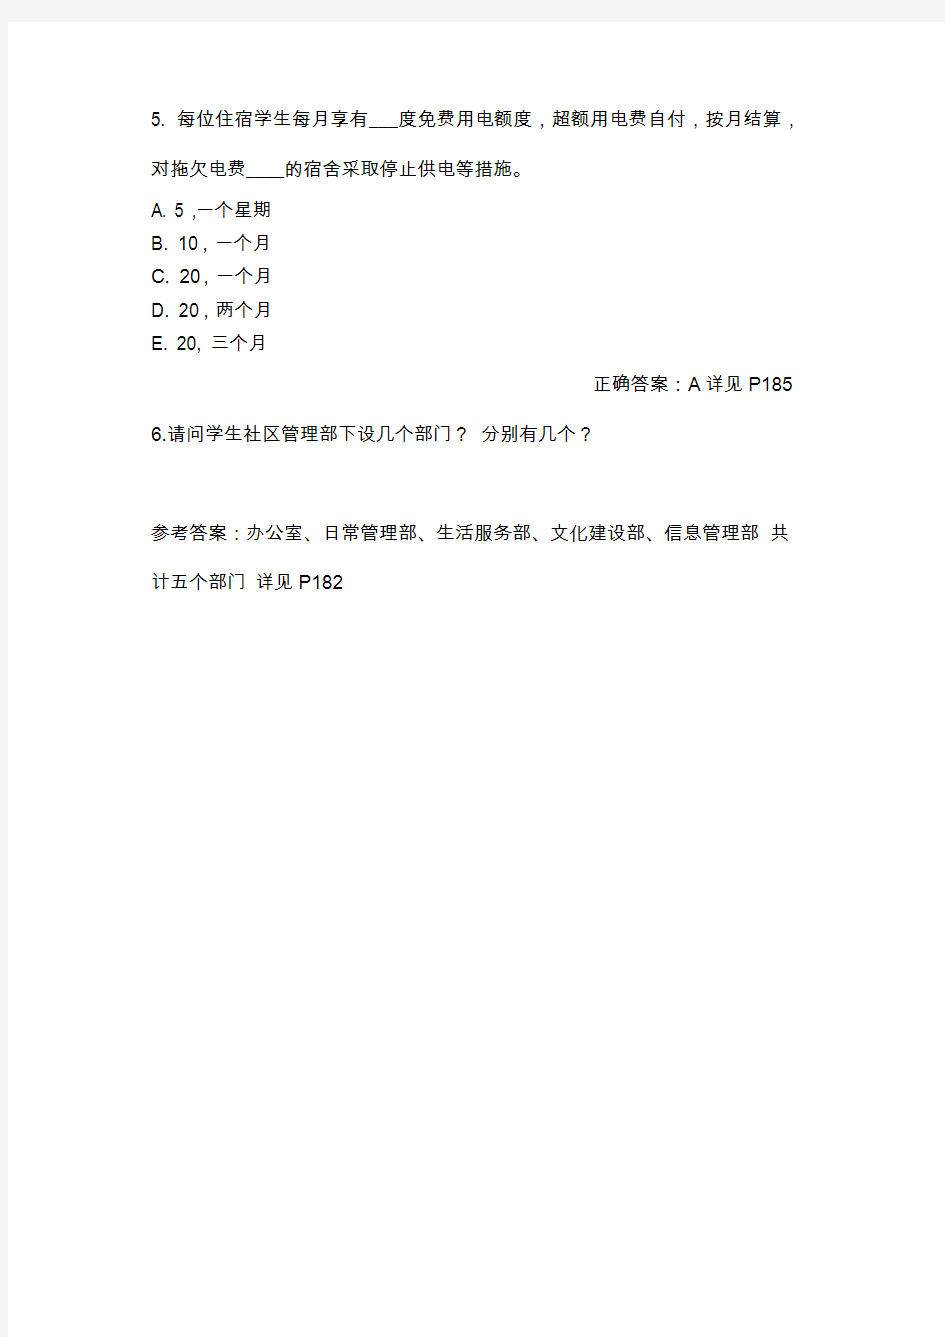 上海大学学生手册P180-P200